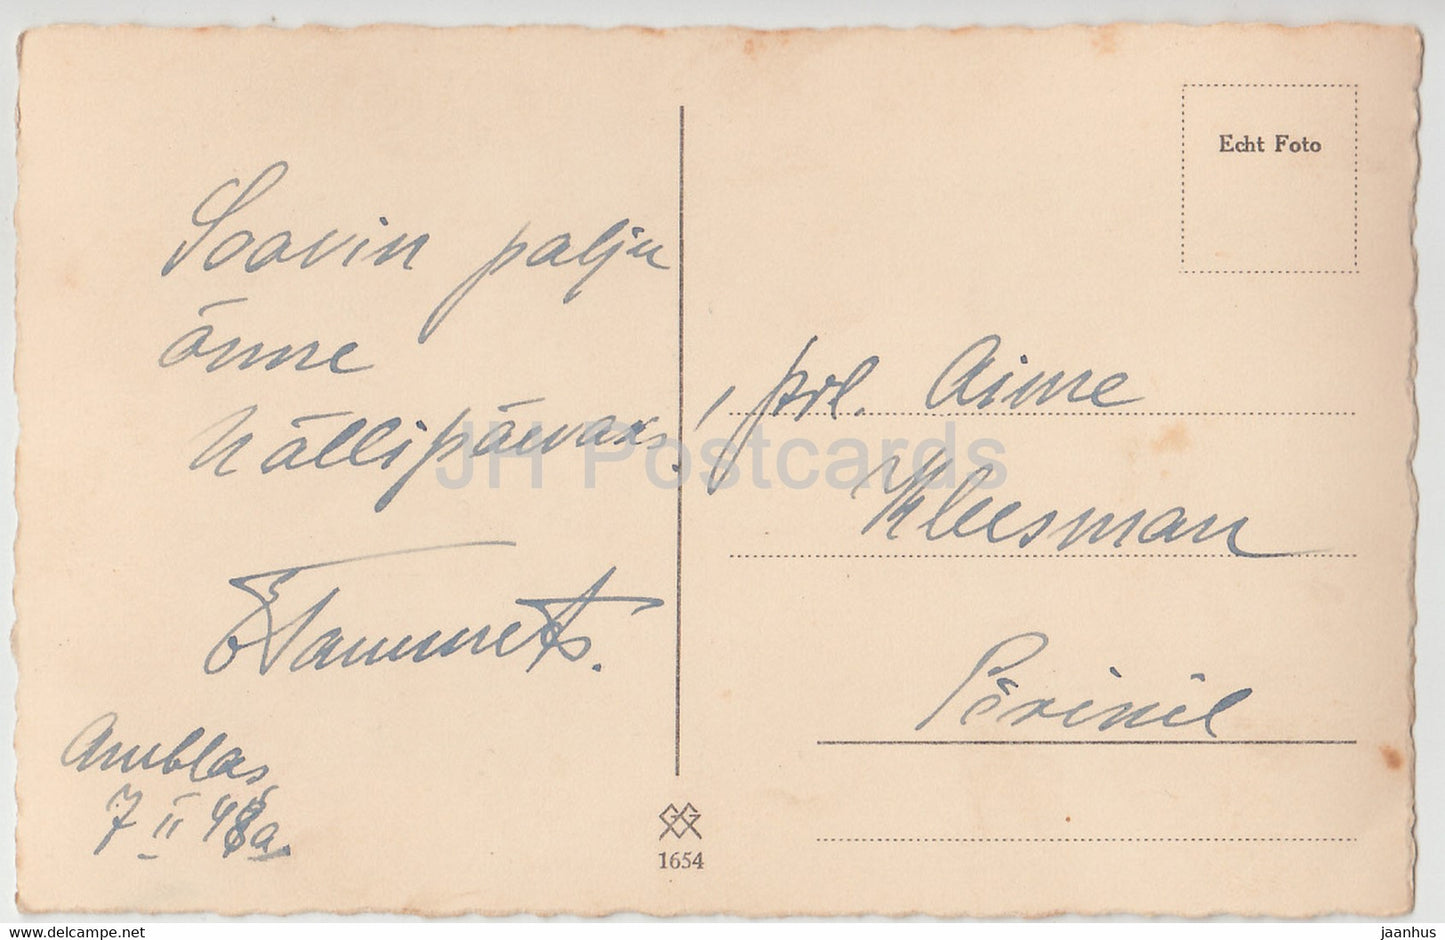 Femme - 1654 - 1948 - Allemagne - carte postale ancienne - utilisé